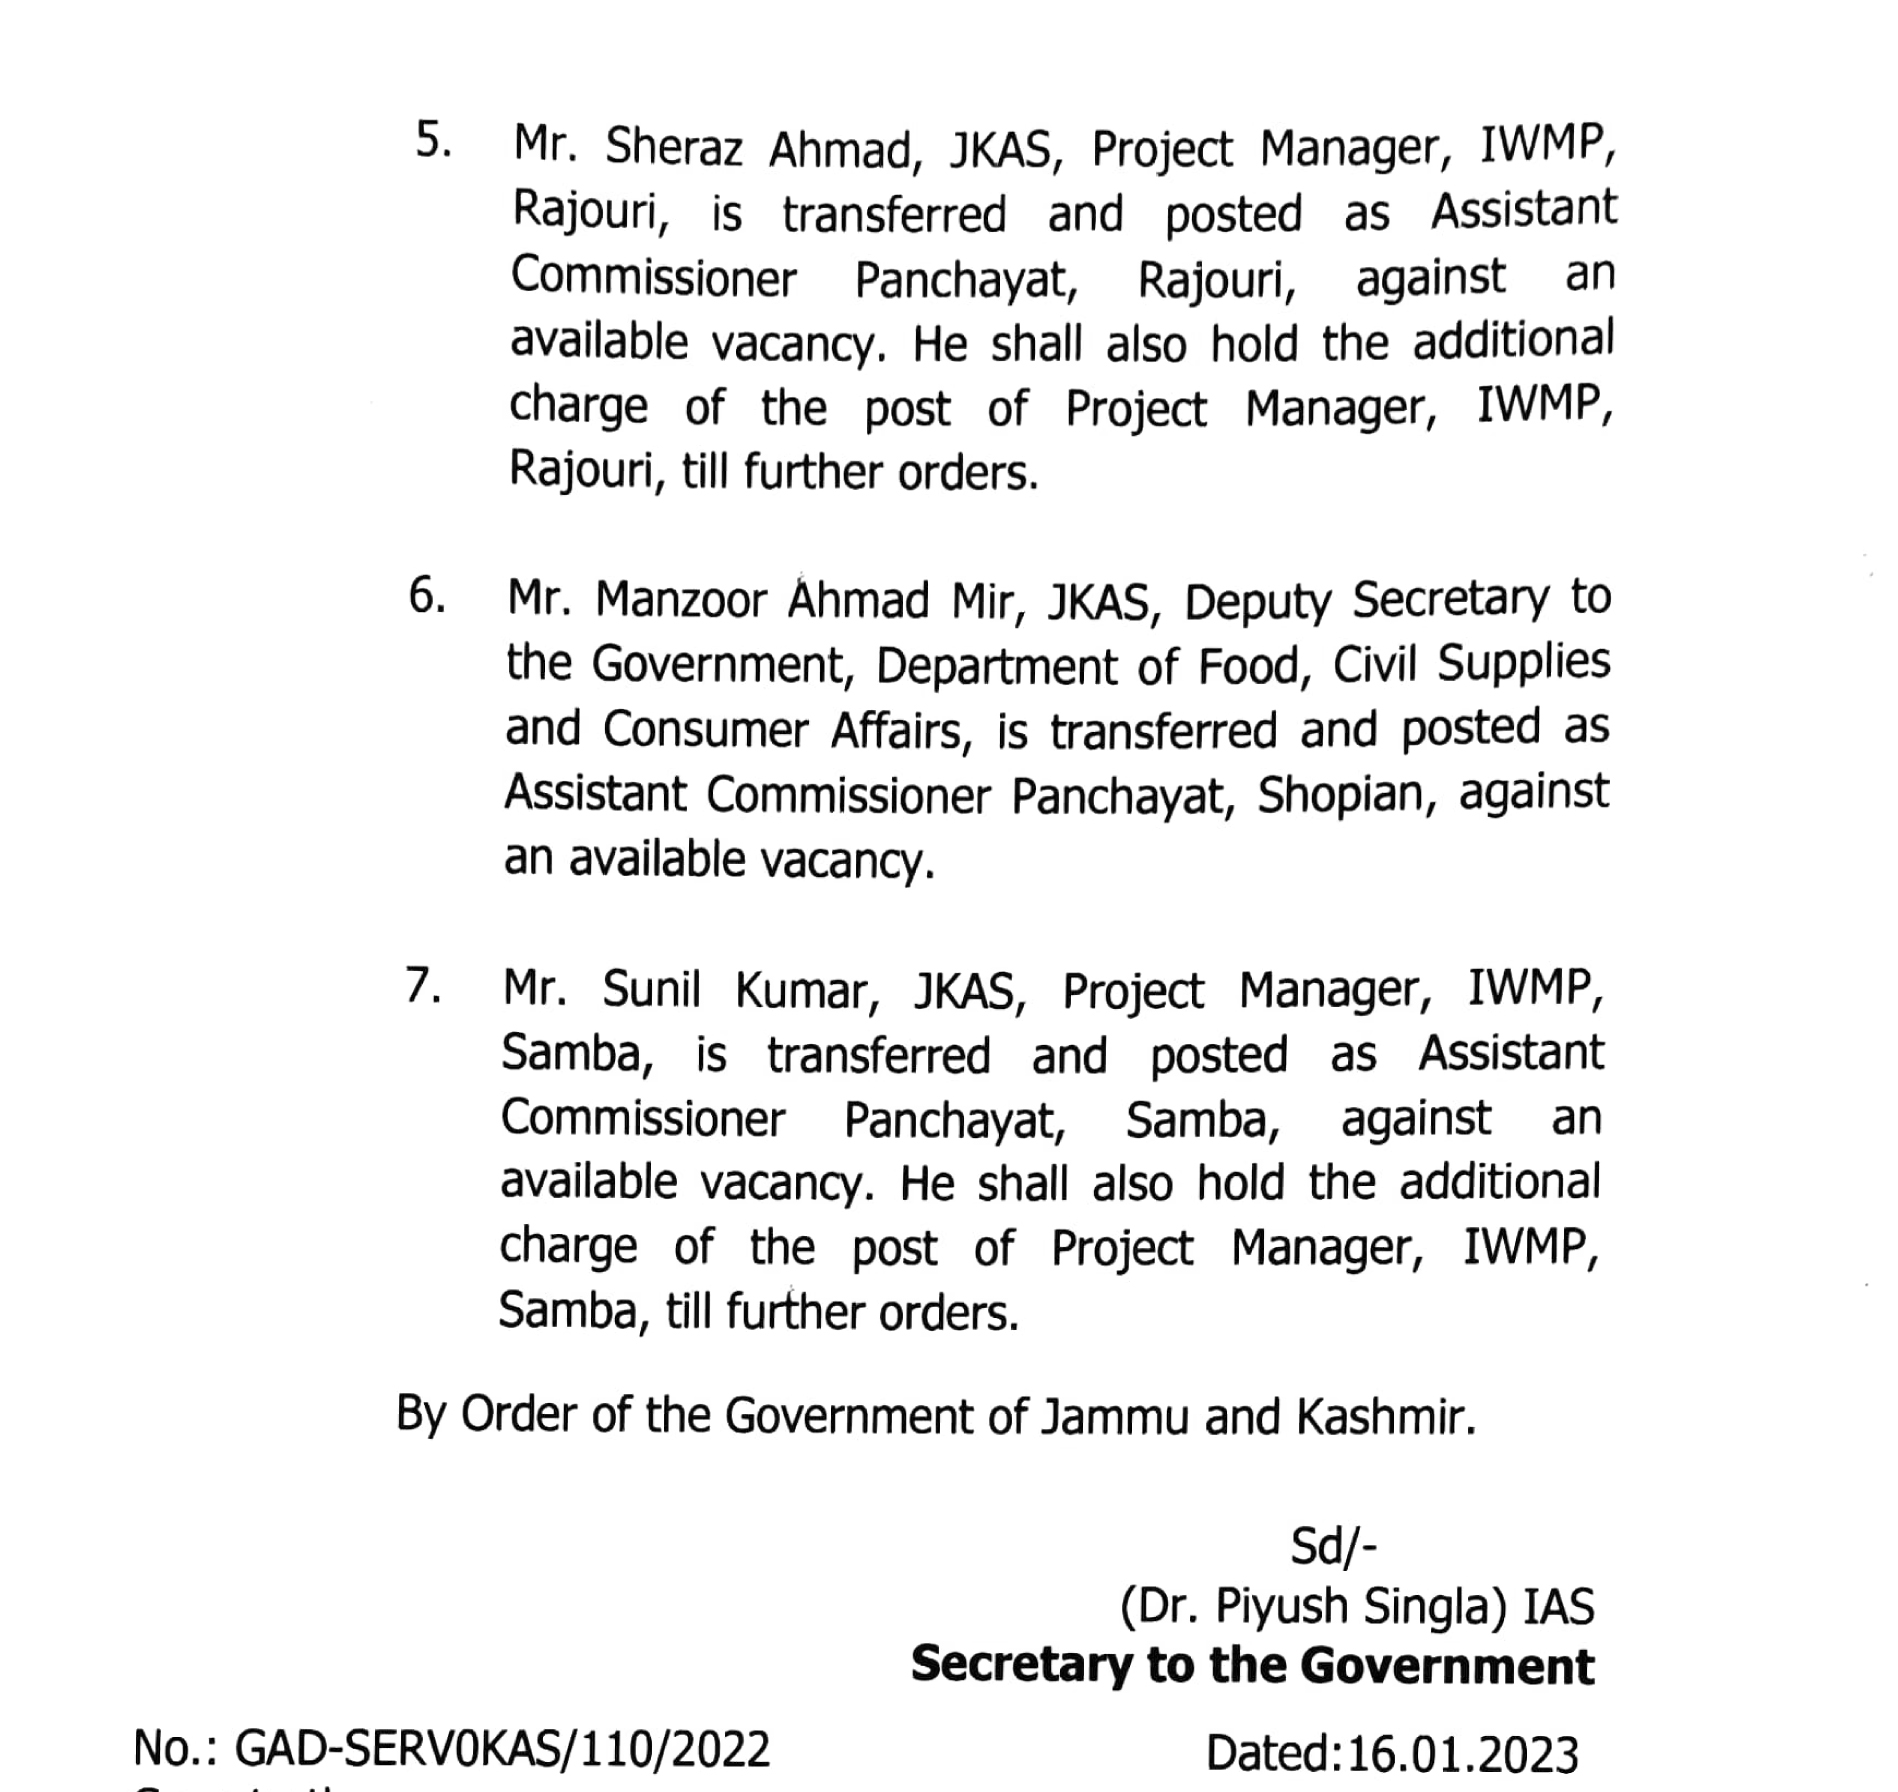 JK Govt Transfer And Posting Of 7 JKAS Officers